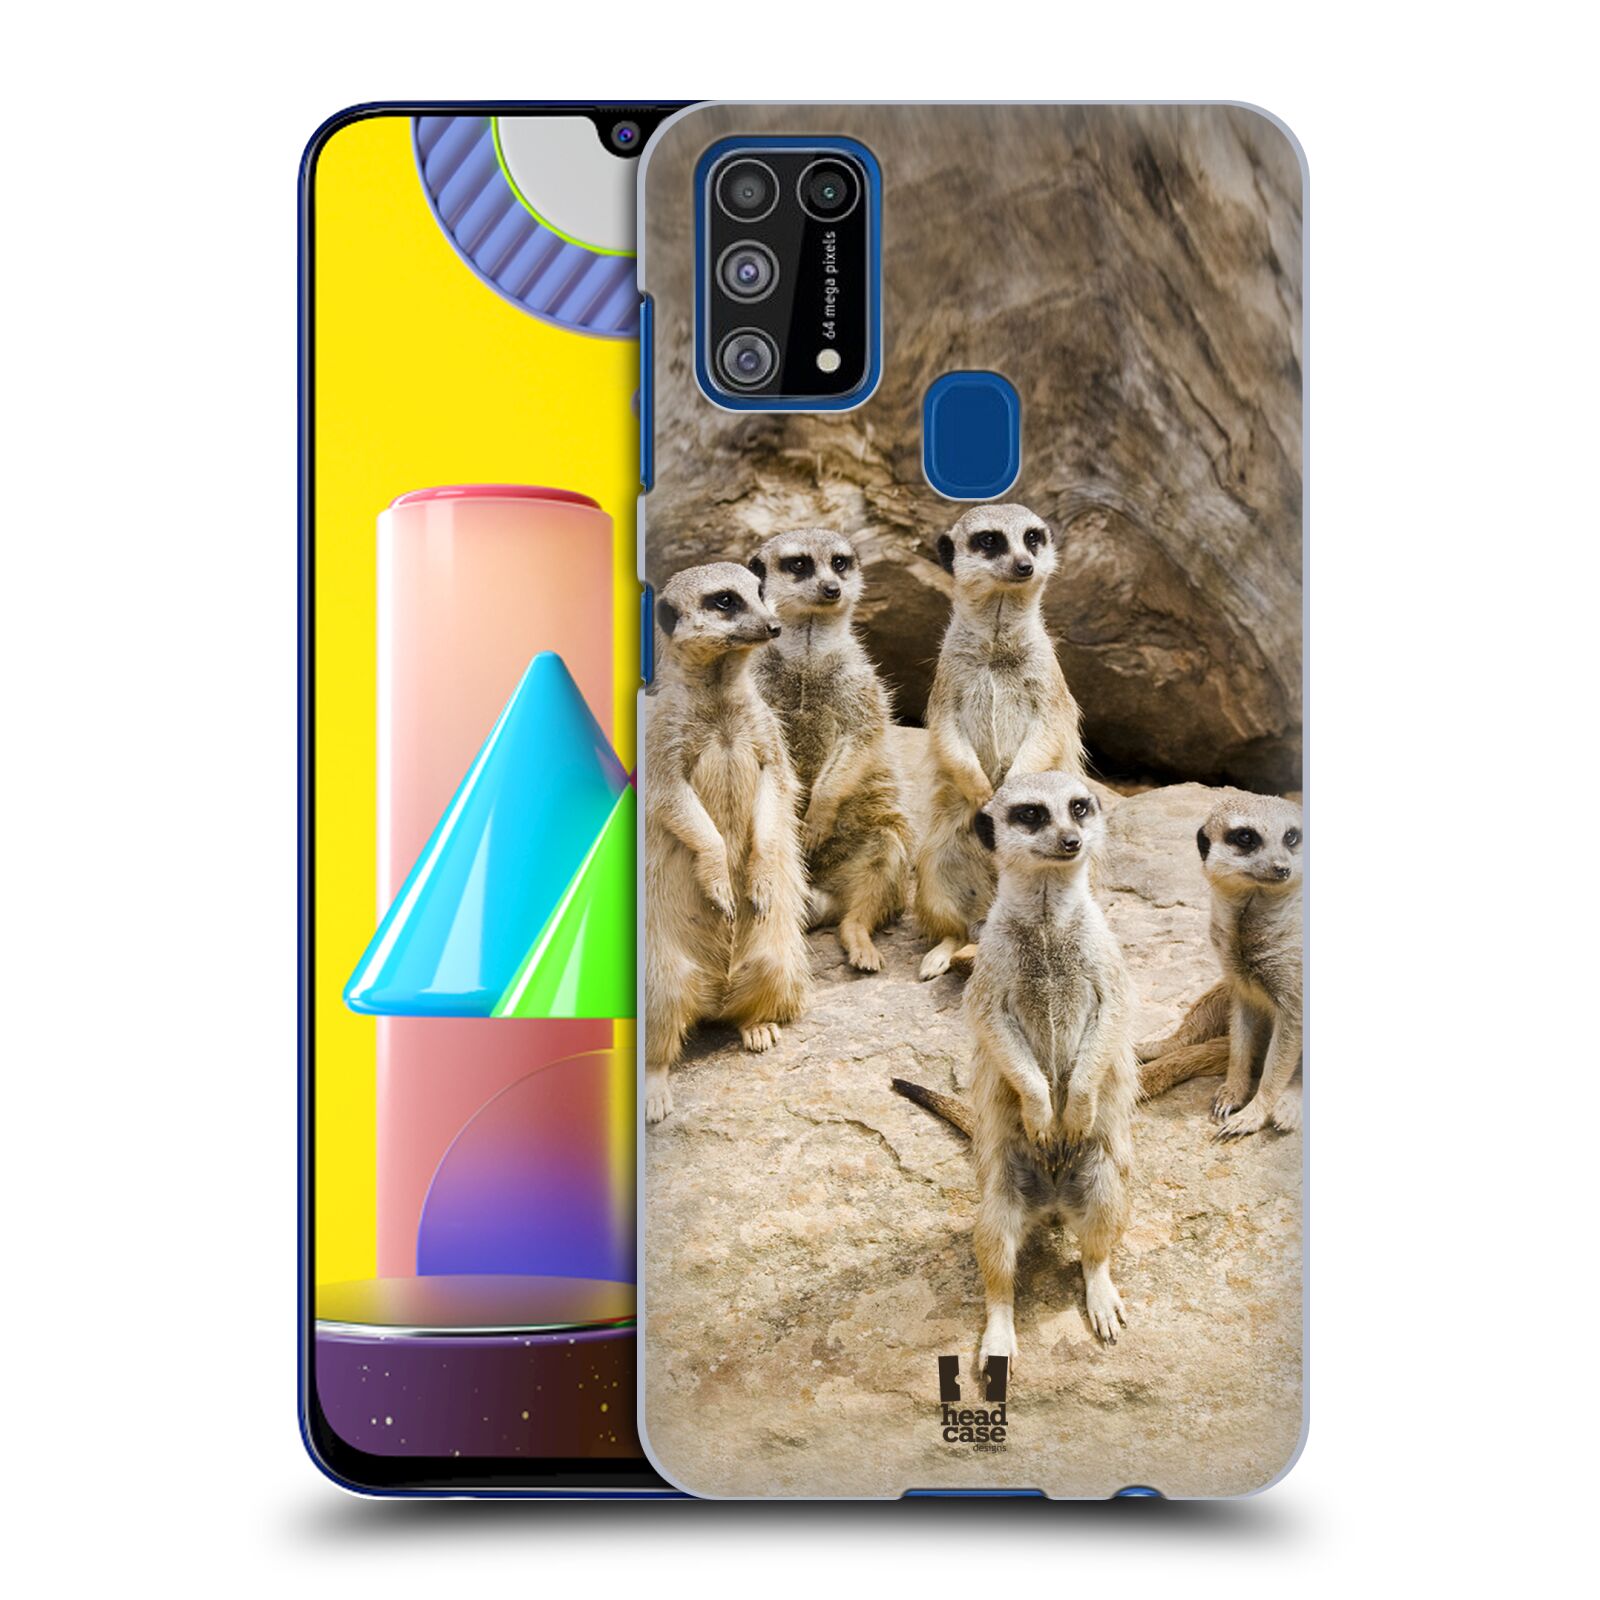 Zadní obal pro mobil Samsung Galaxy M31 - HEAD CASE - Svět zvířat roztomilé surikaty